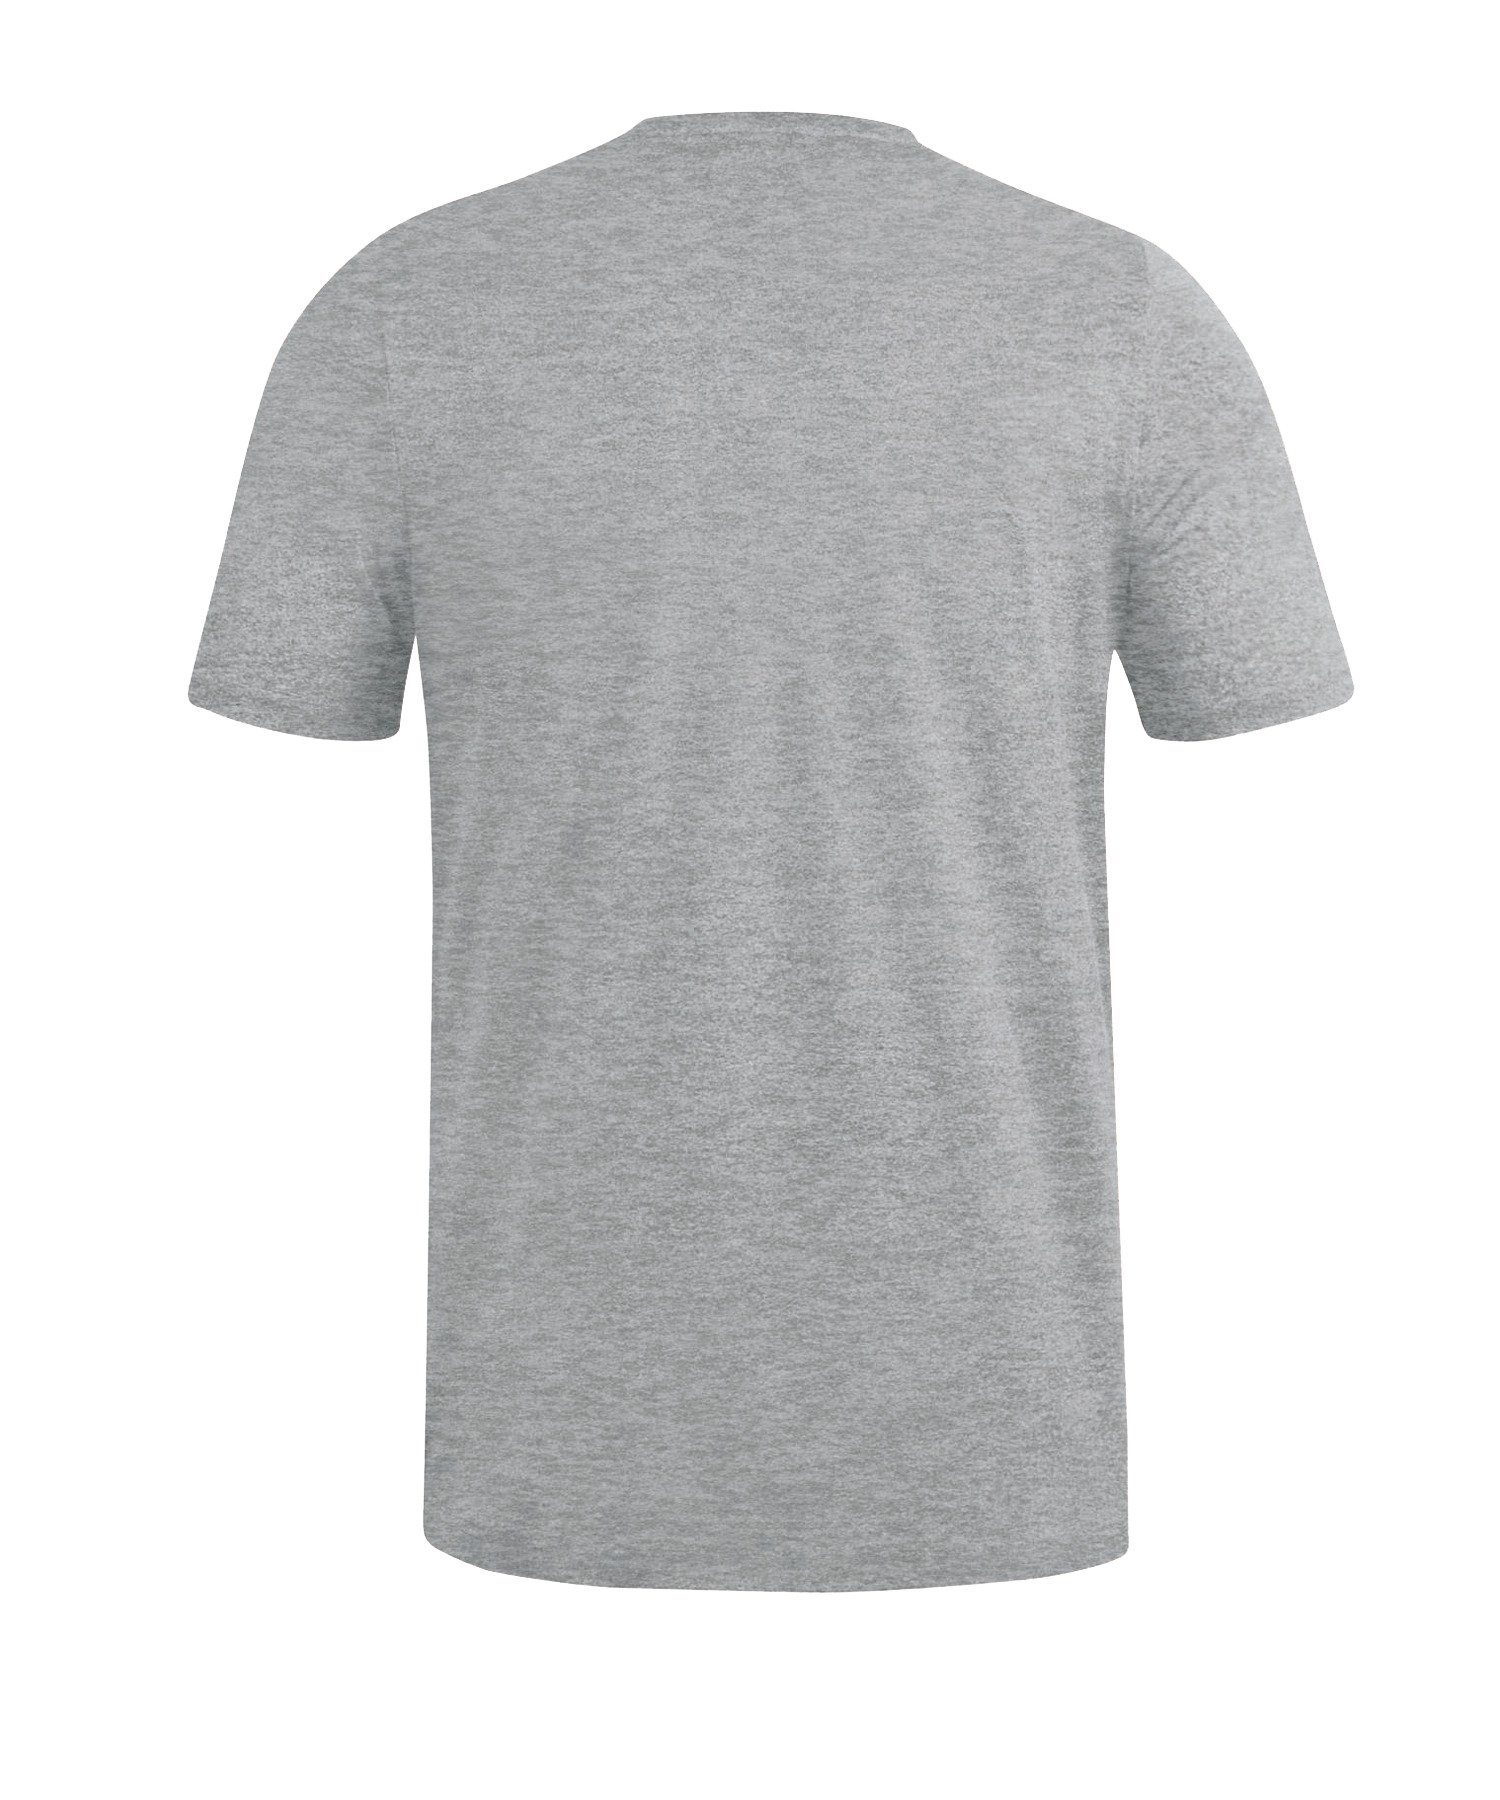 Jako grau default T-Shirt T-Shirt Premium Basic